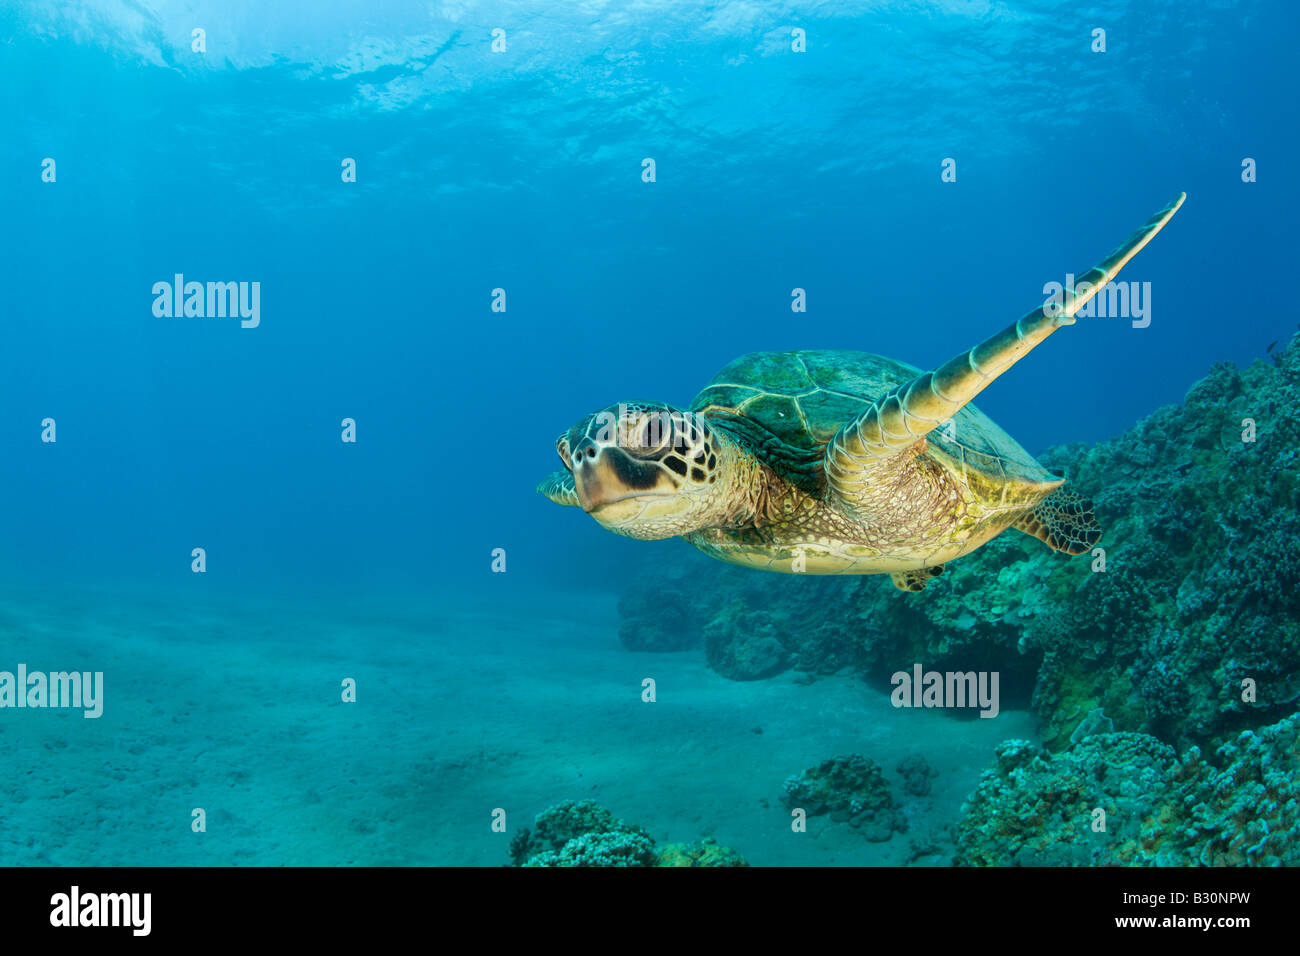 Grüne Schildkröte Chelonia Mydas Marshallinseln Bikini Atoll Mikronesien Pazifischen Ozean Stockfoto